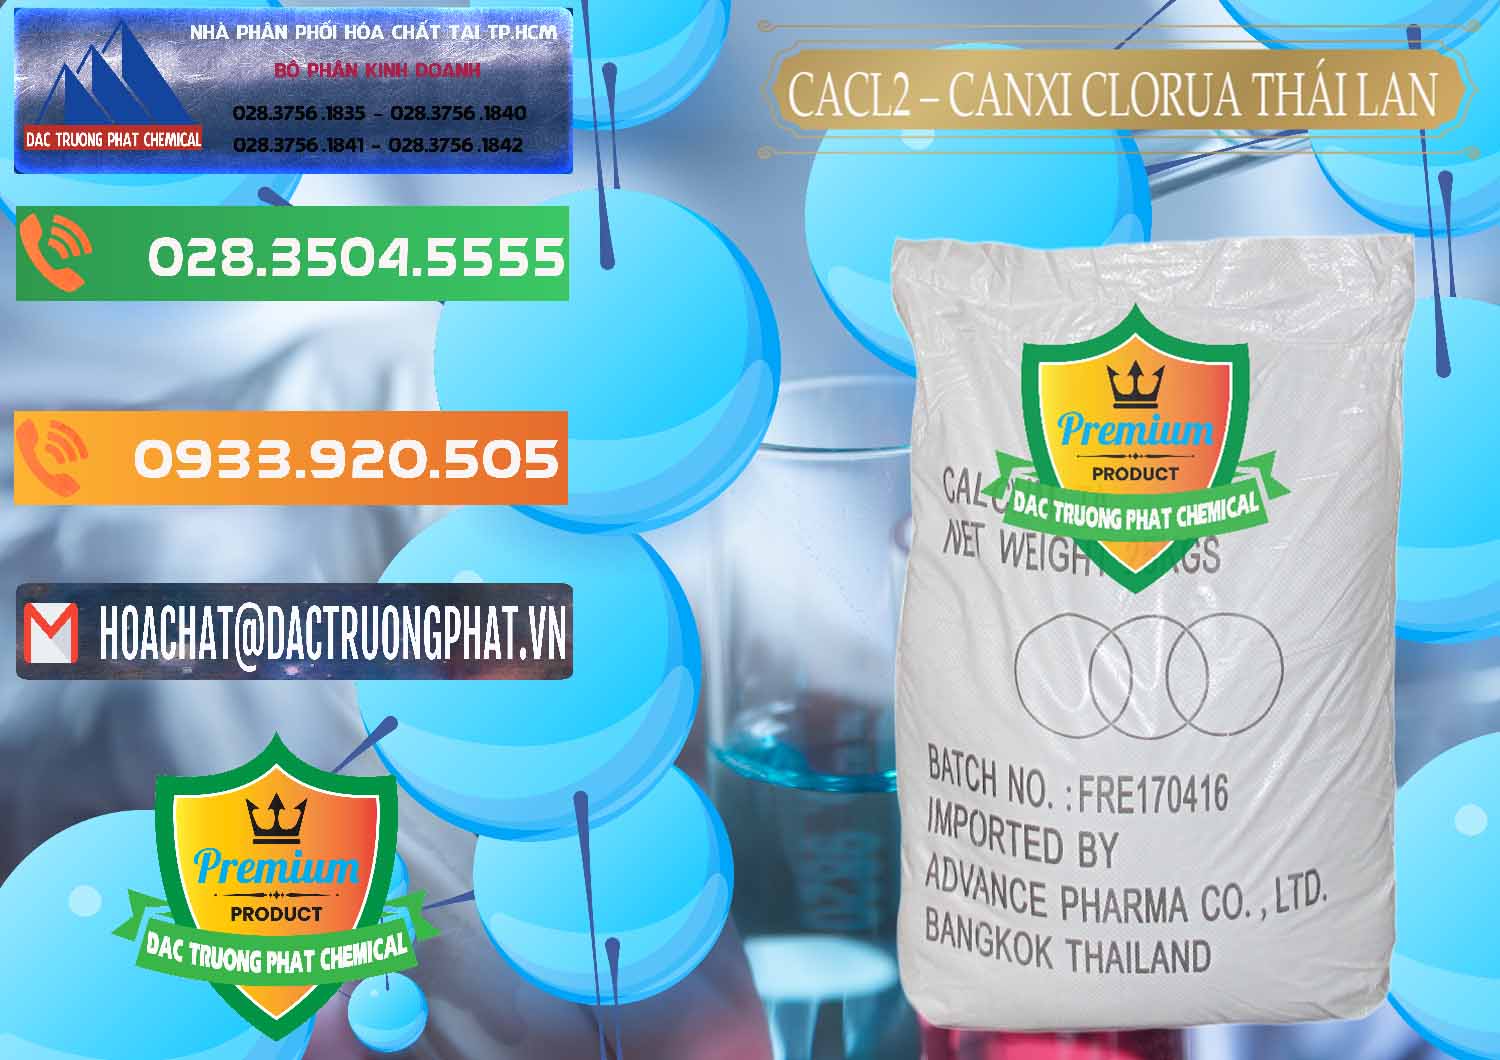 Cty phân phối và bán CaCl2 – Canxi Clorua 96% Thái Lan - 0042 - Nhà cung cấp & kinh doanh hóa chất tại TP.HCM - hoachatxulynuoc.com.vn